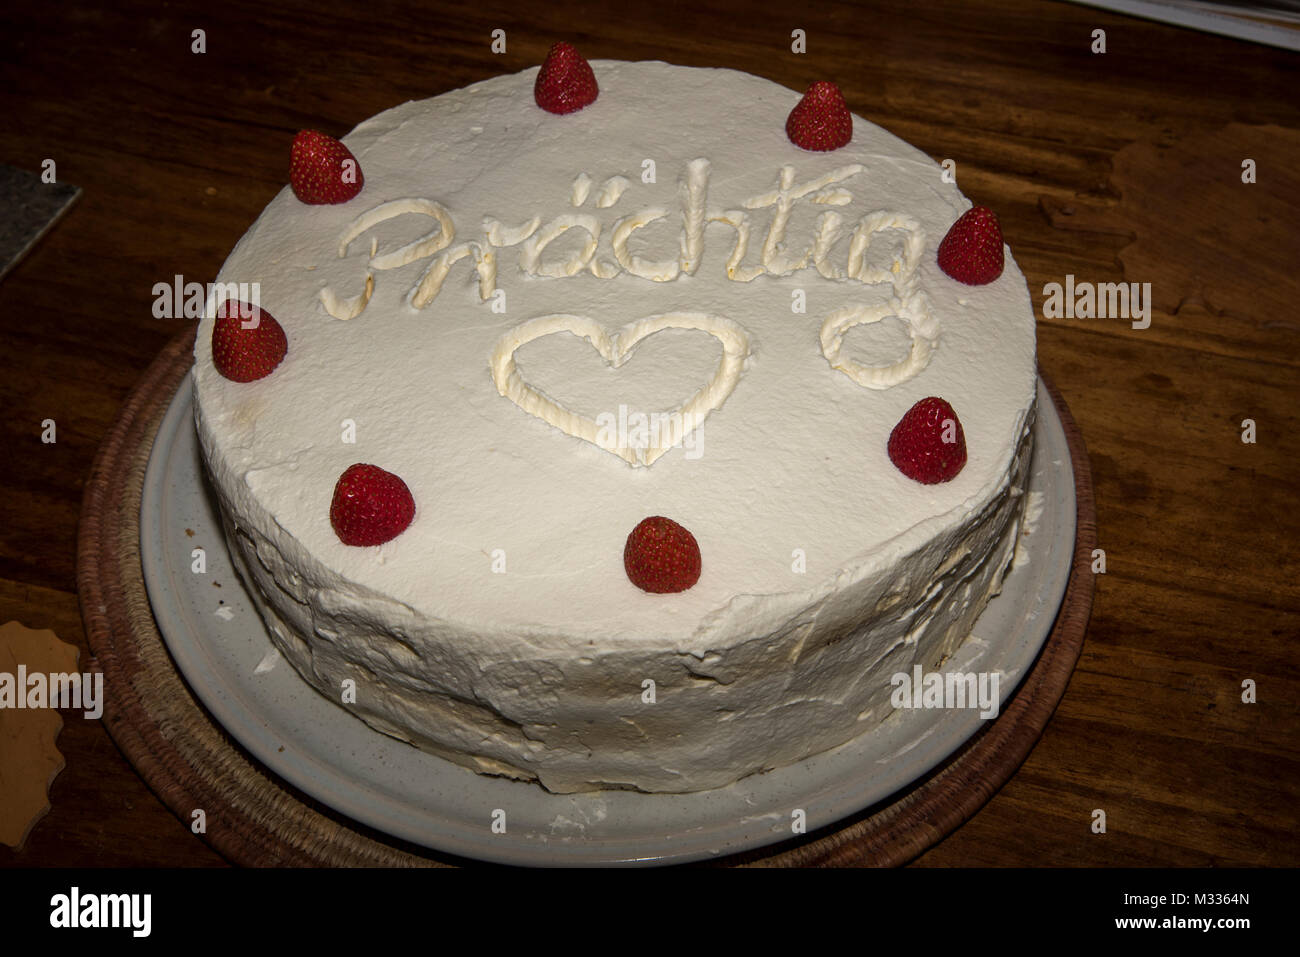 A home made cake is served with decorative ornamentic elements.  Eine selbstgebackene Torte  mit einer netten Verzierung. Stock Photo